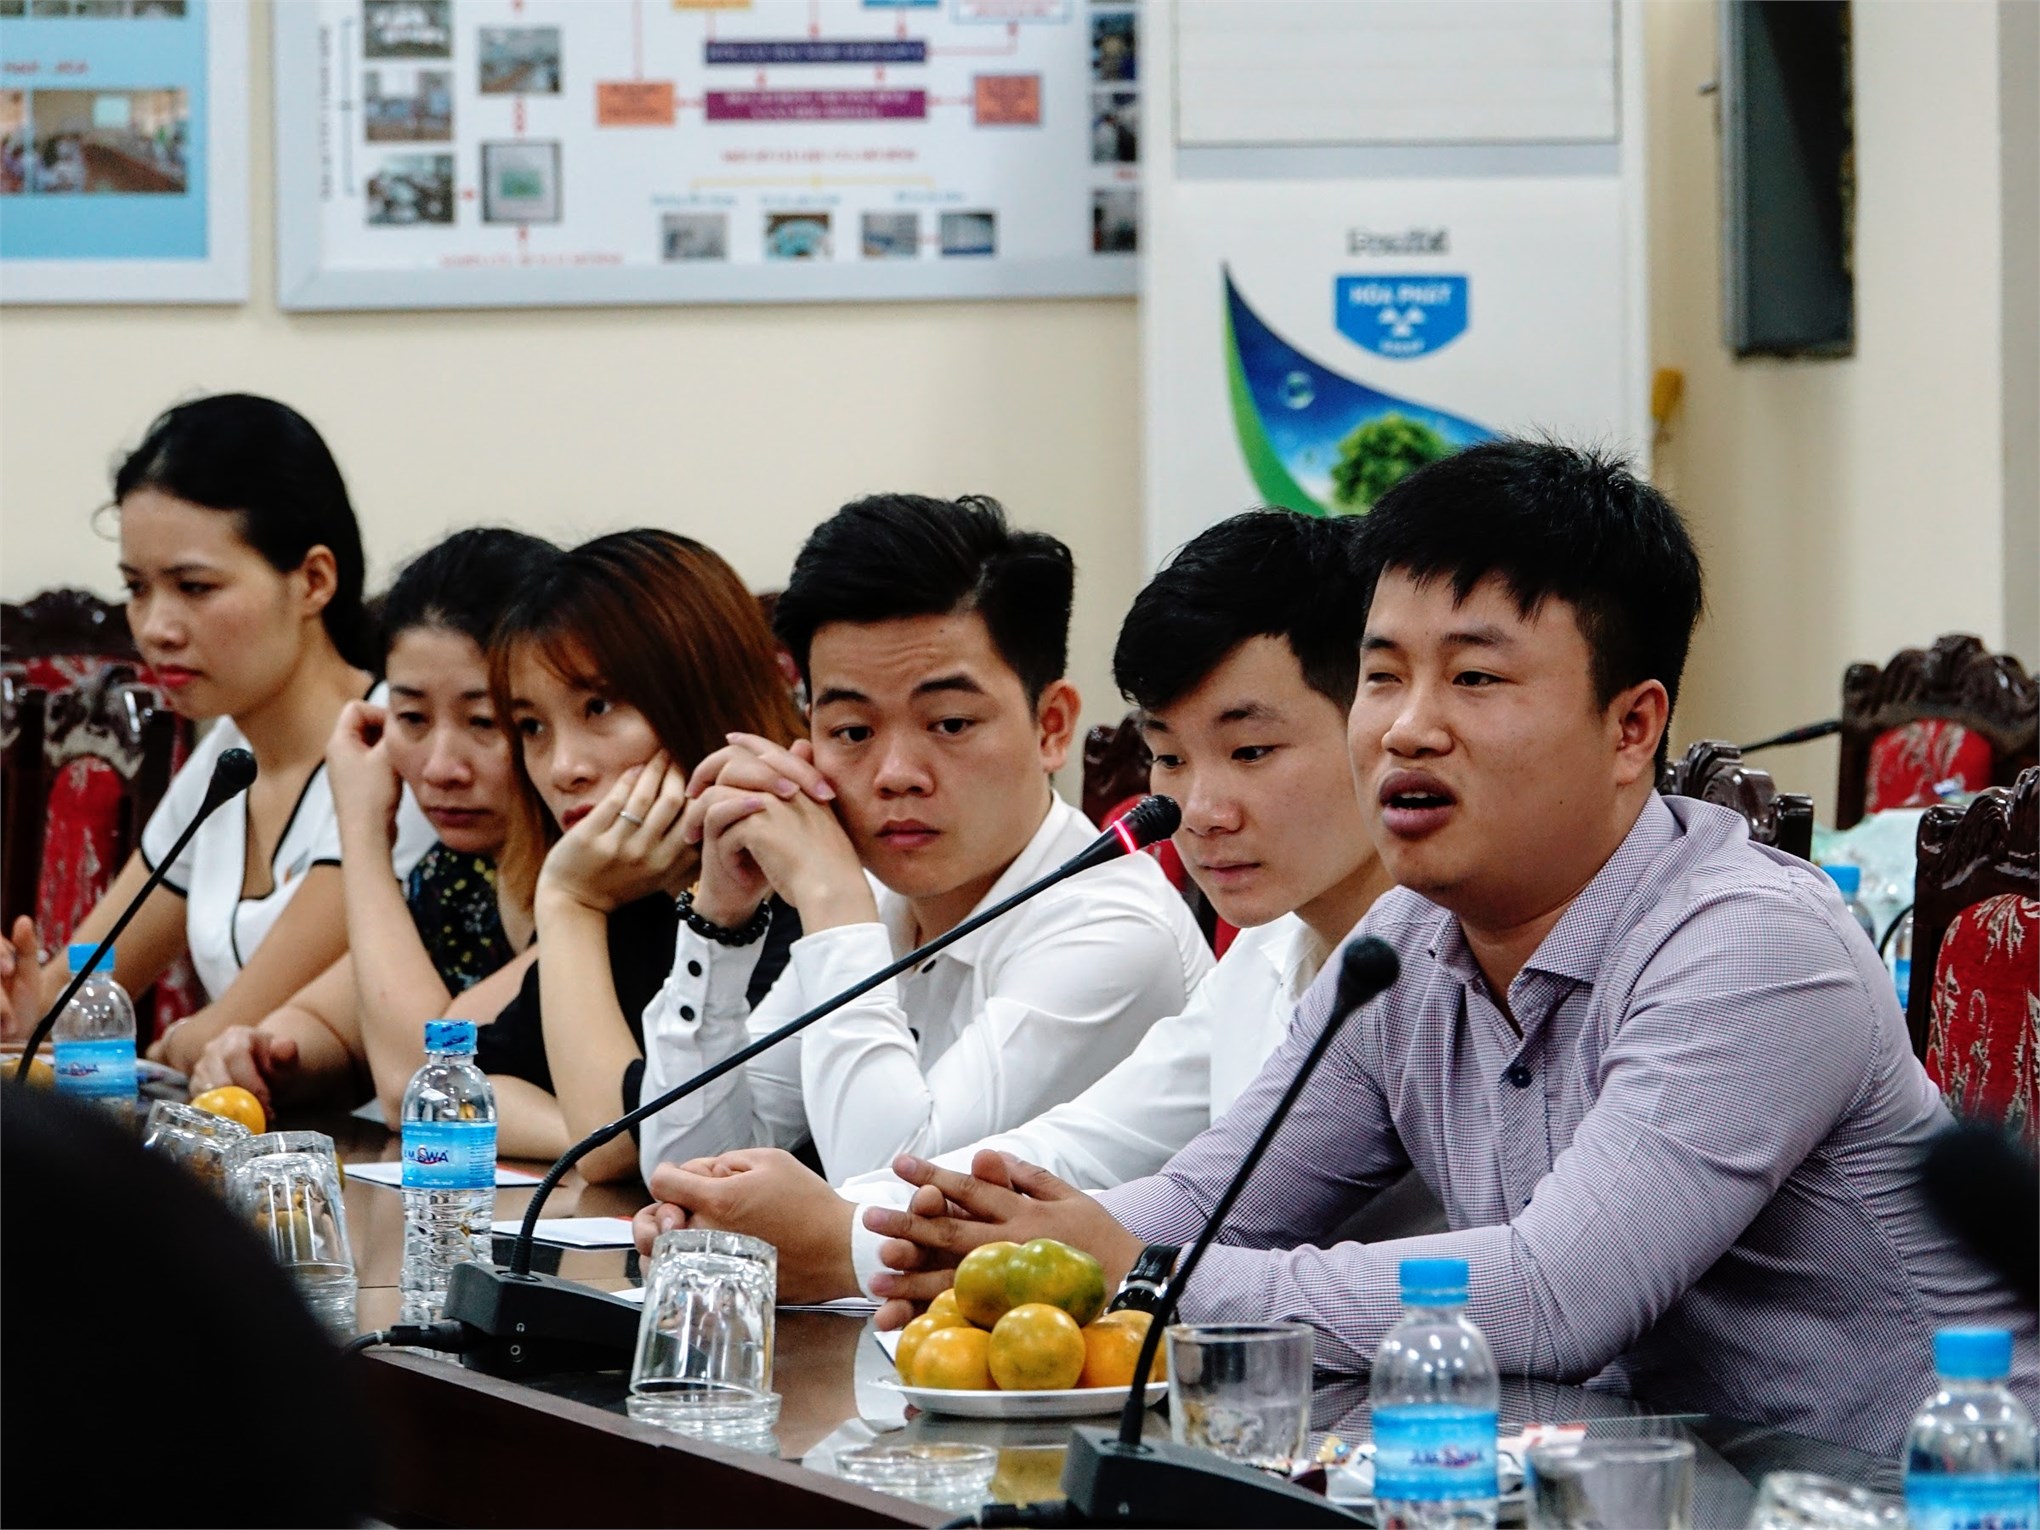 Đại học Công nghiệp Hà Nội viết tiếp ước mơ cho sinh viên khuyết tật